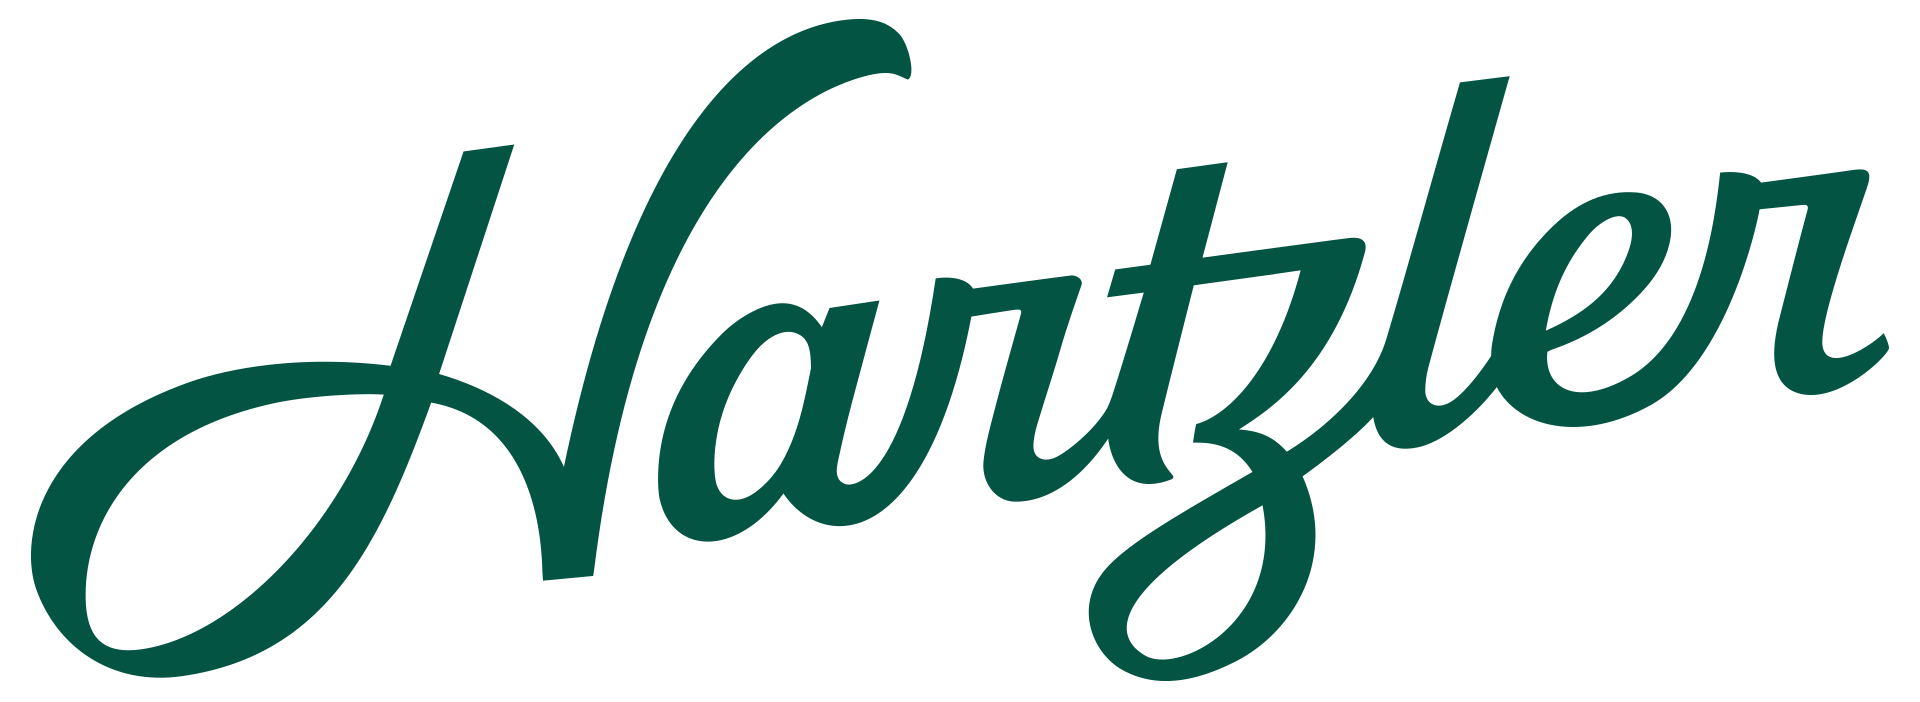 Hartzler-Logo